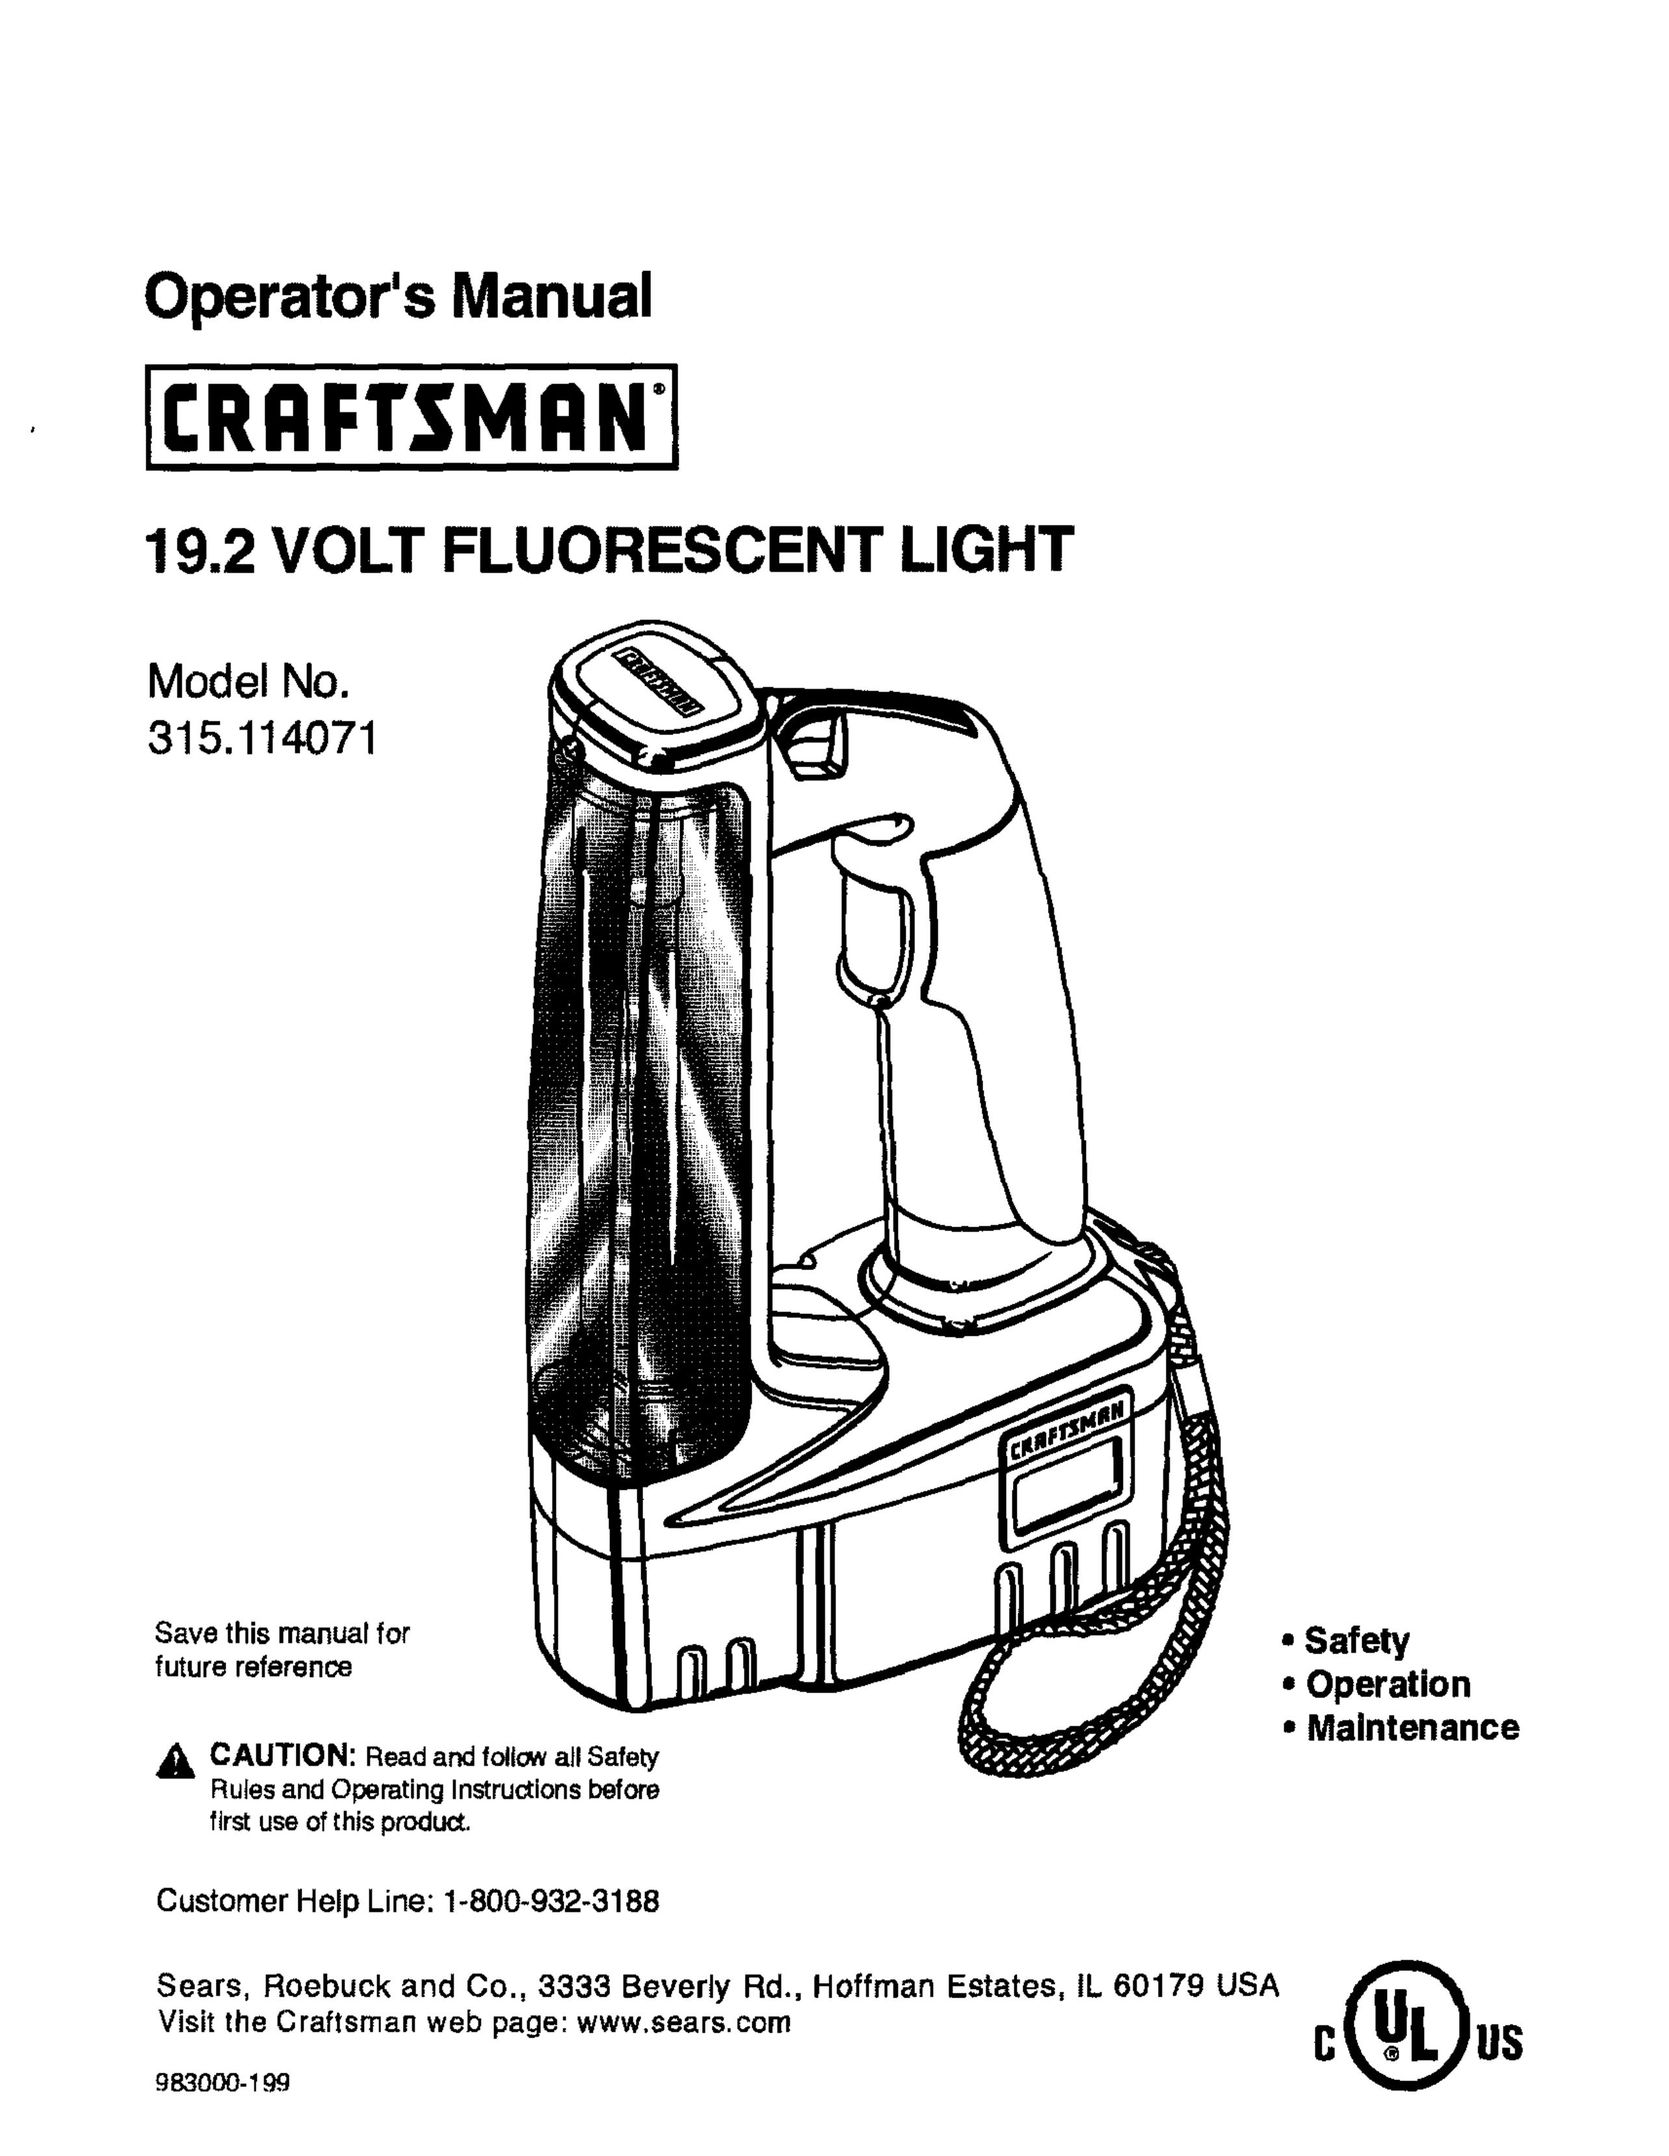 Craftsman 315.114071 Work Light User Manual